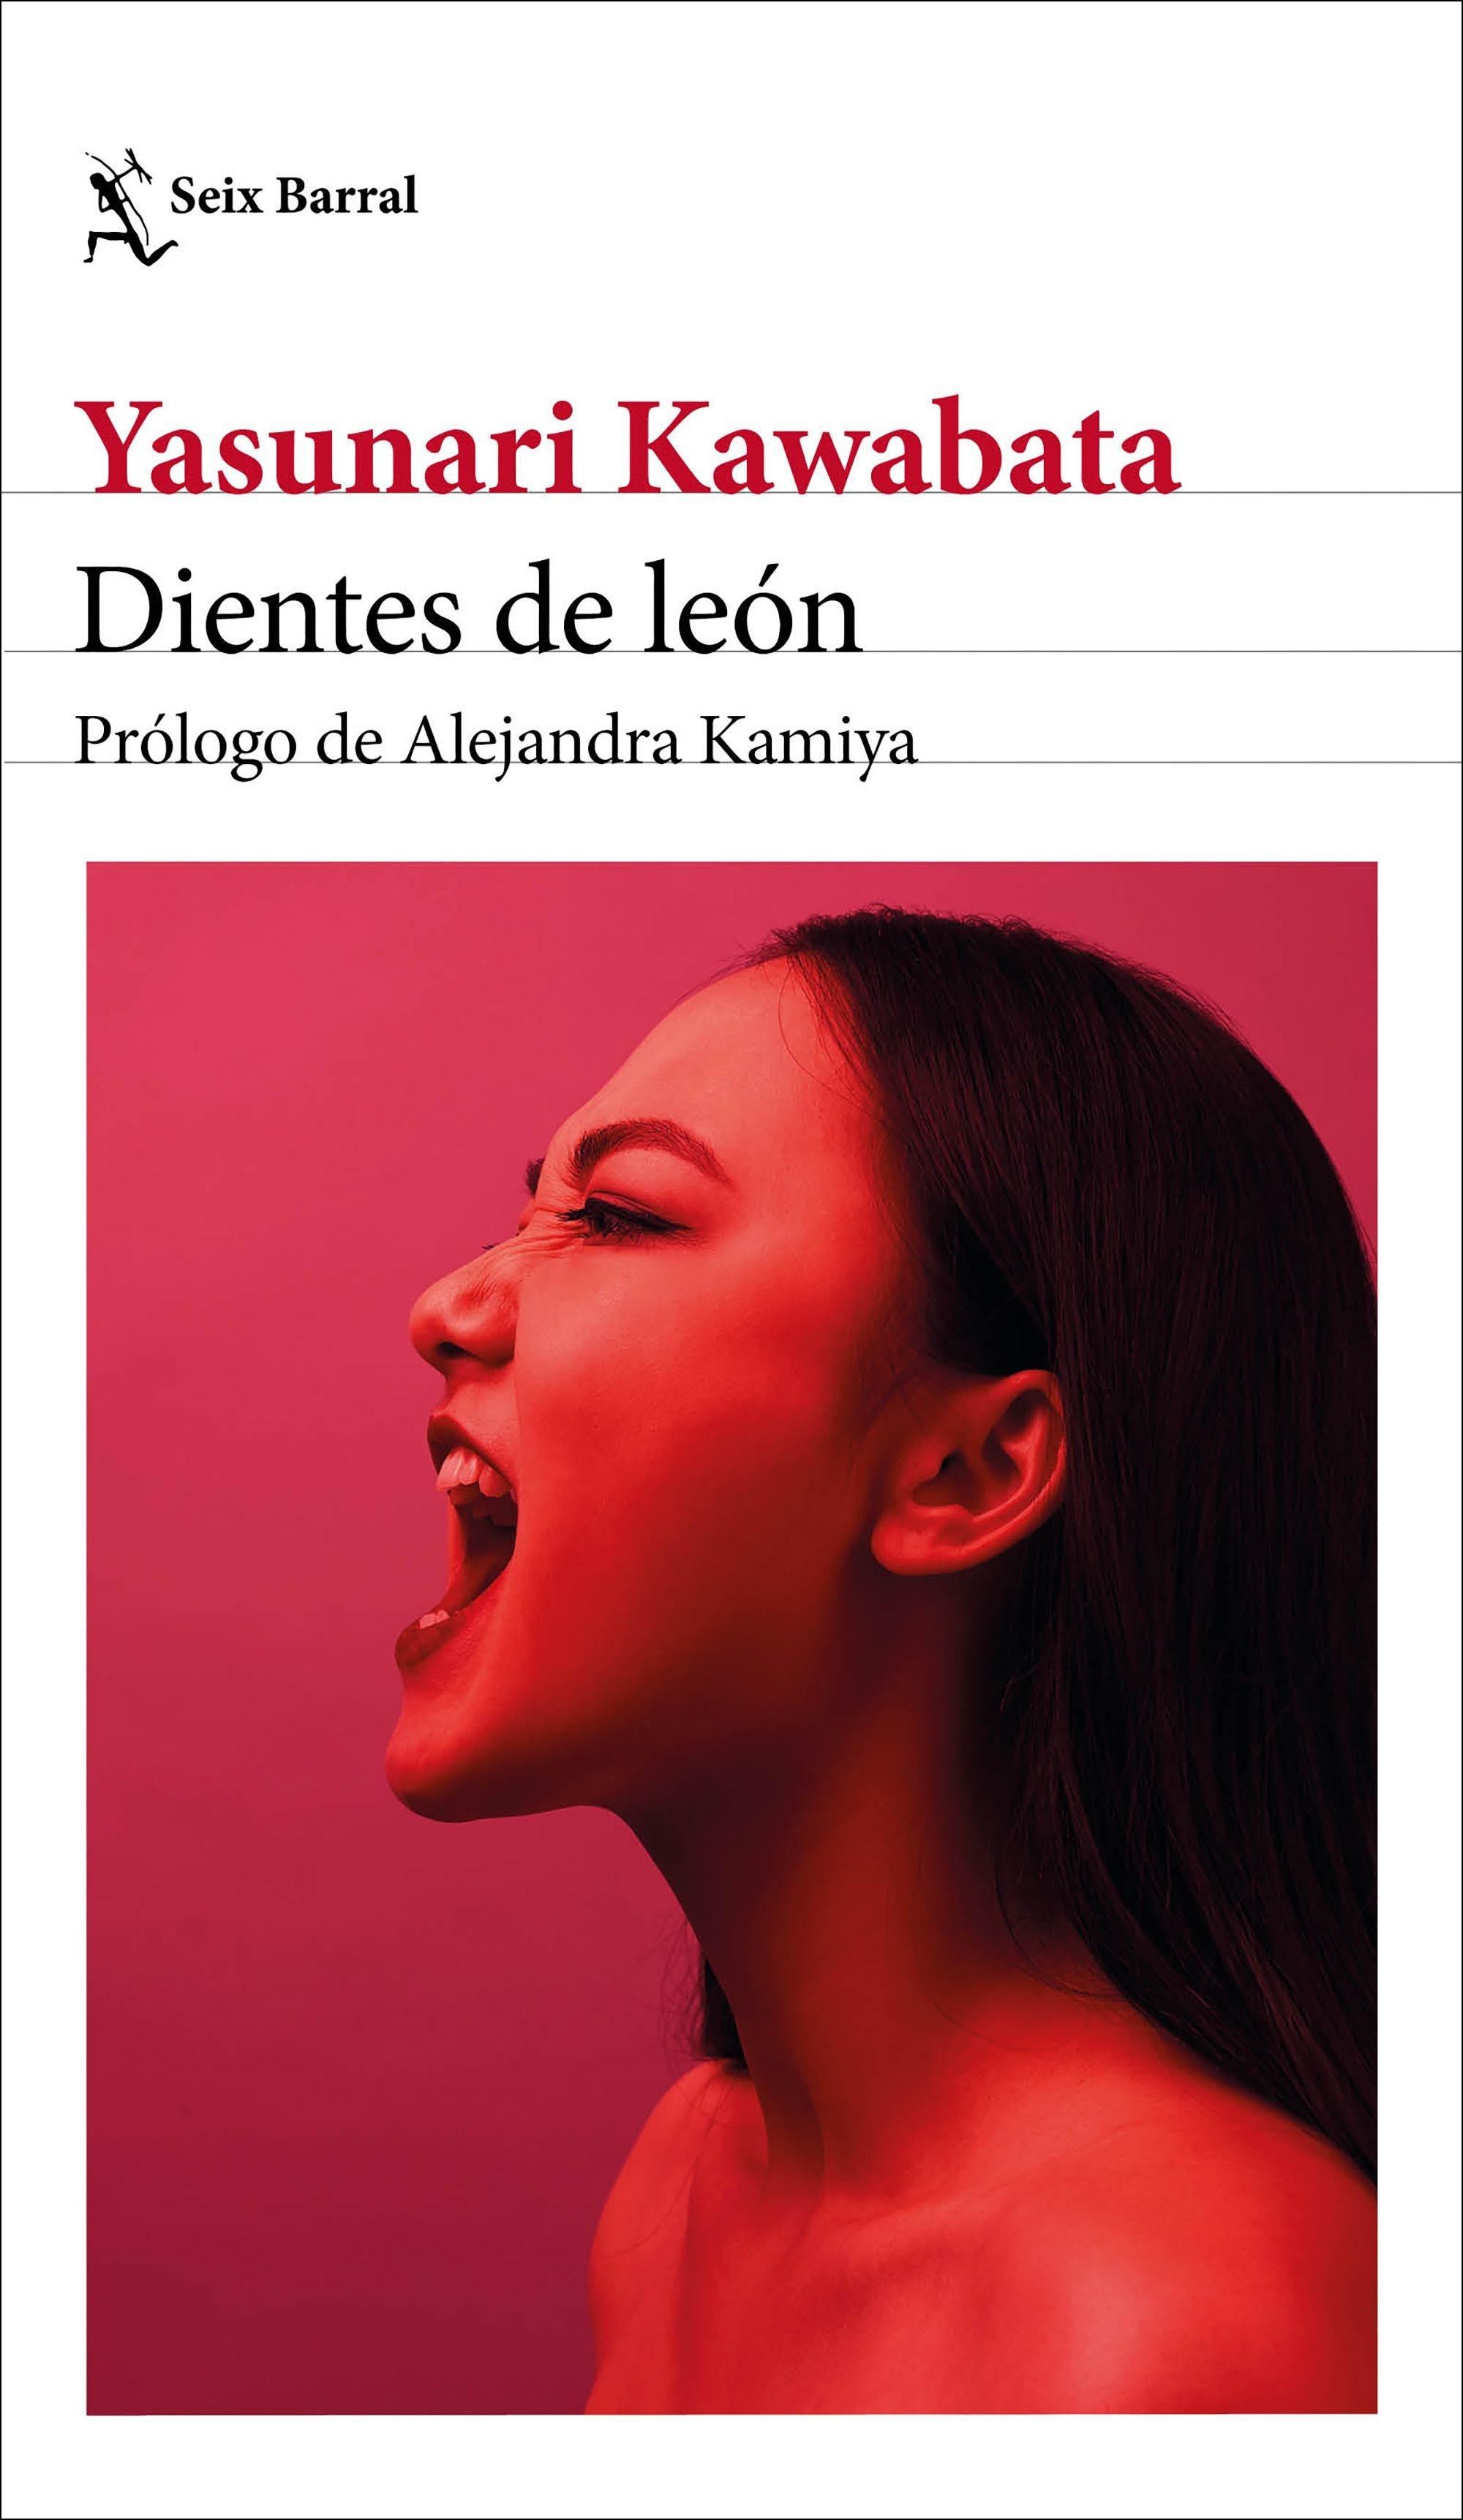 Dientes de León "Prólogo de Alejandra Kamiya". 